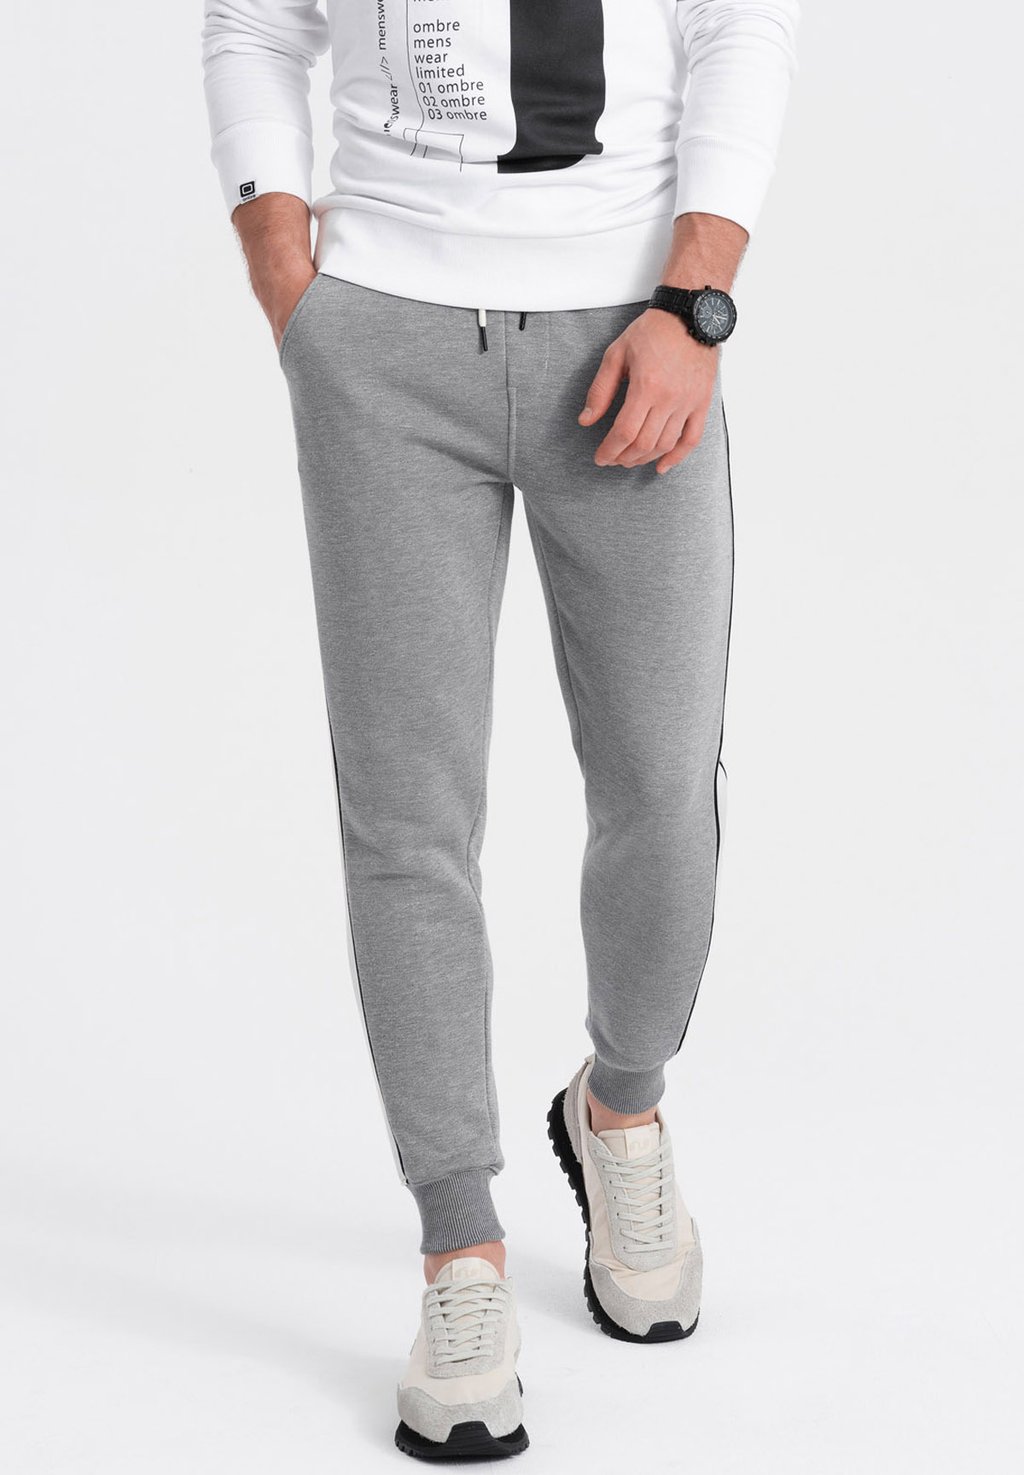 Спортивные брюки Ombre, серый меланж спортивные брюки ombre серый меланж